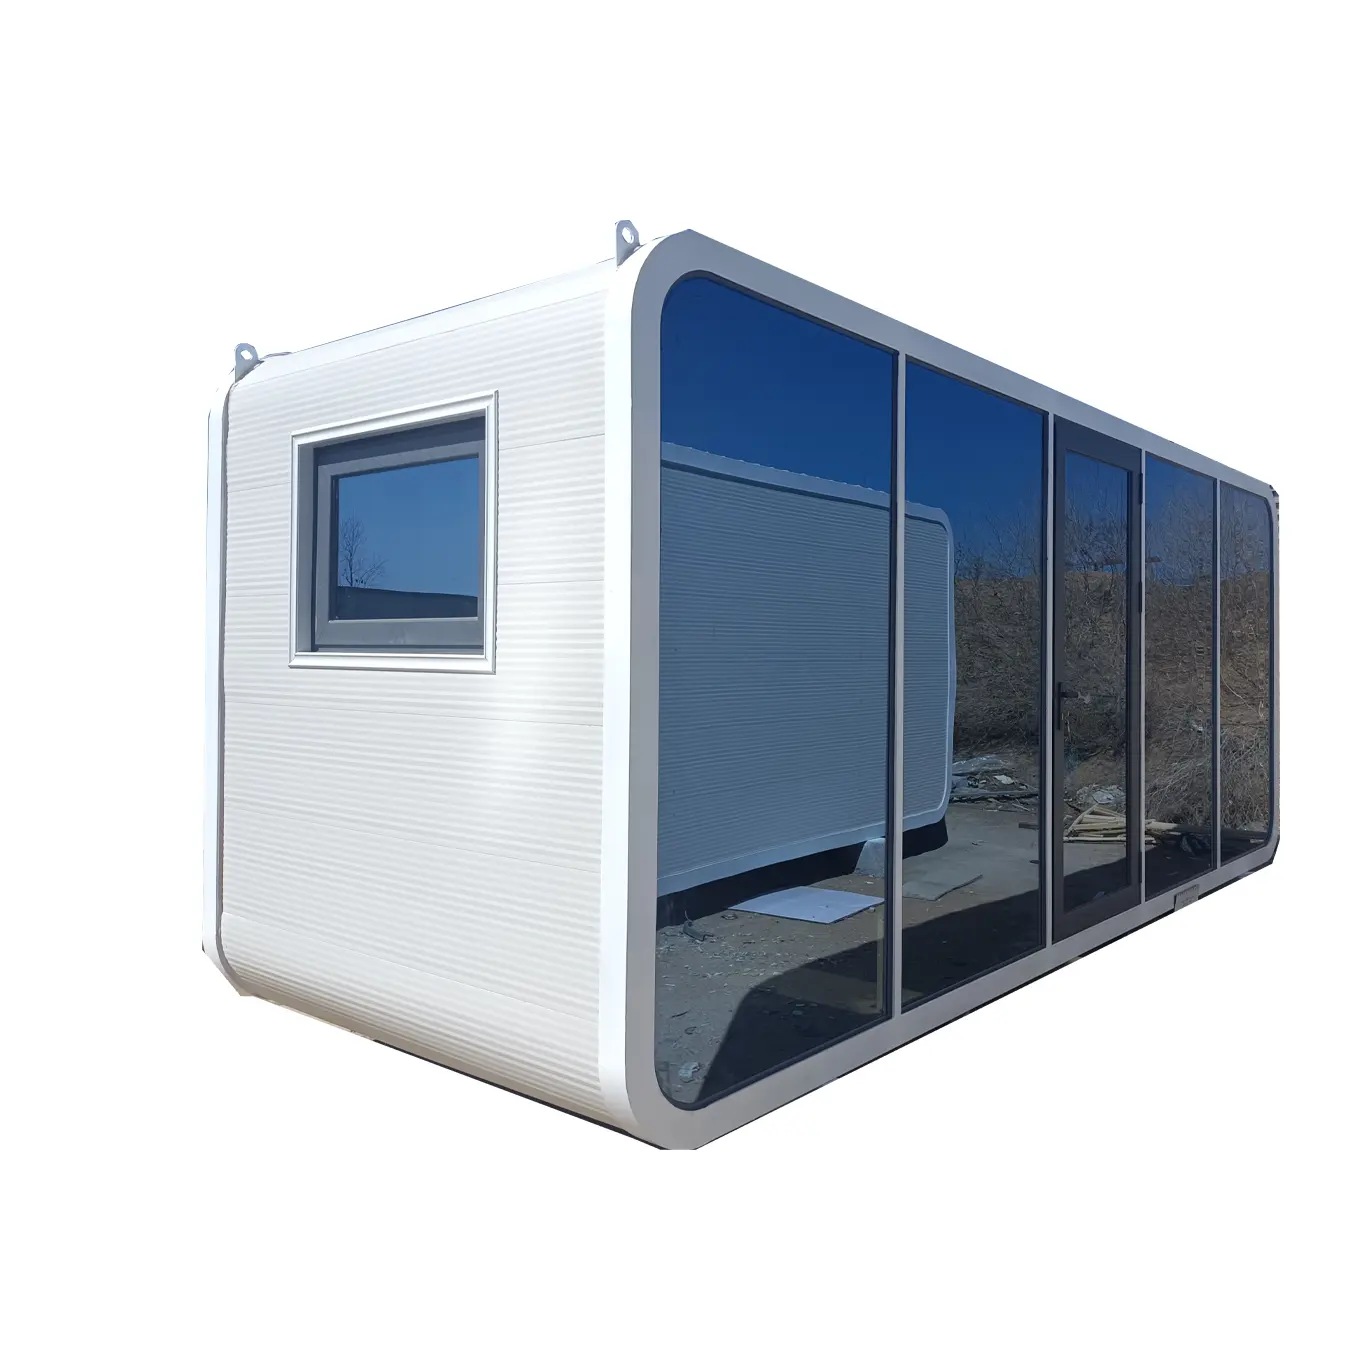 Apple kapsul kabin rumah rumah rumah kabin seluler kapsul ruang kabin kecil